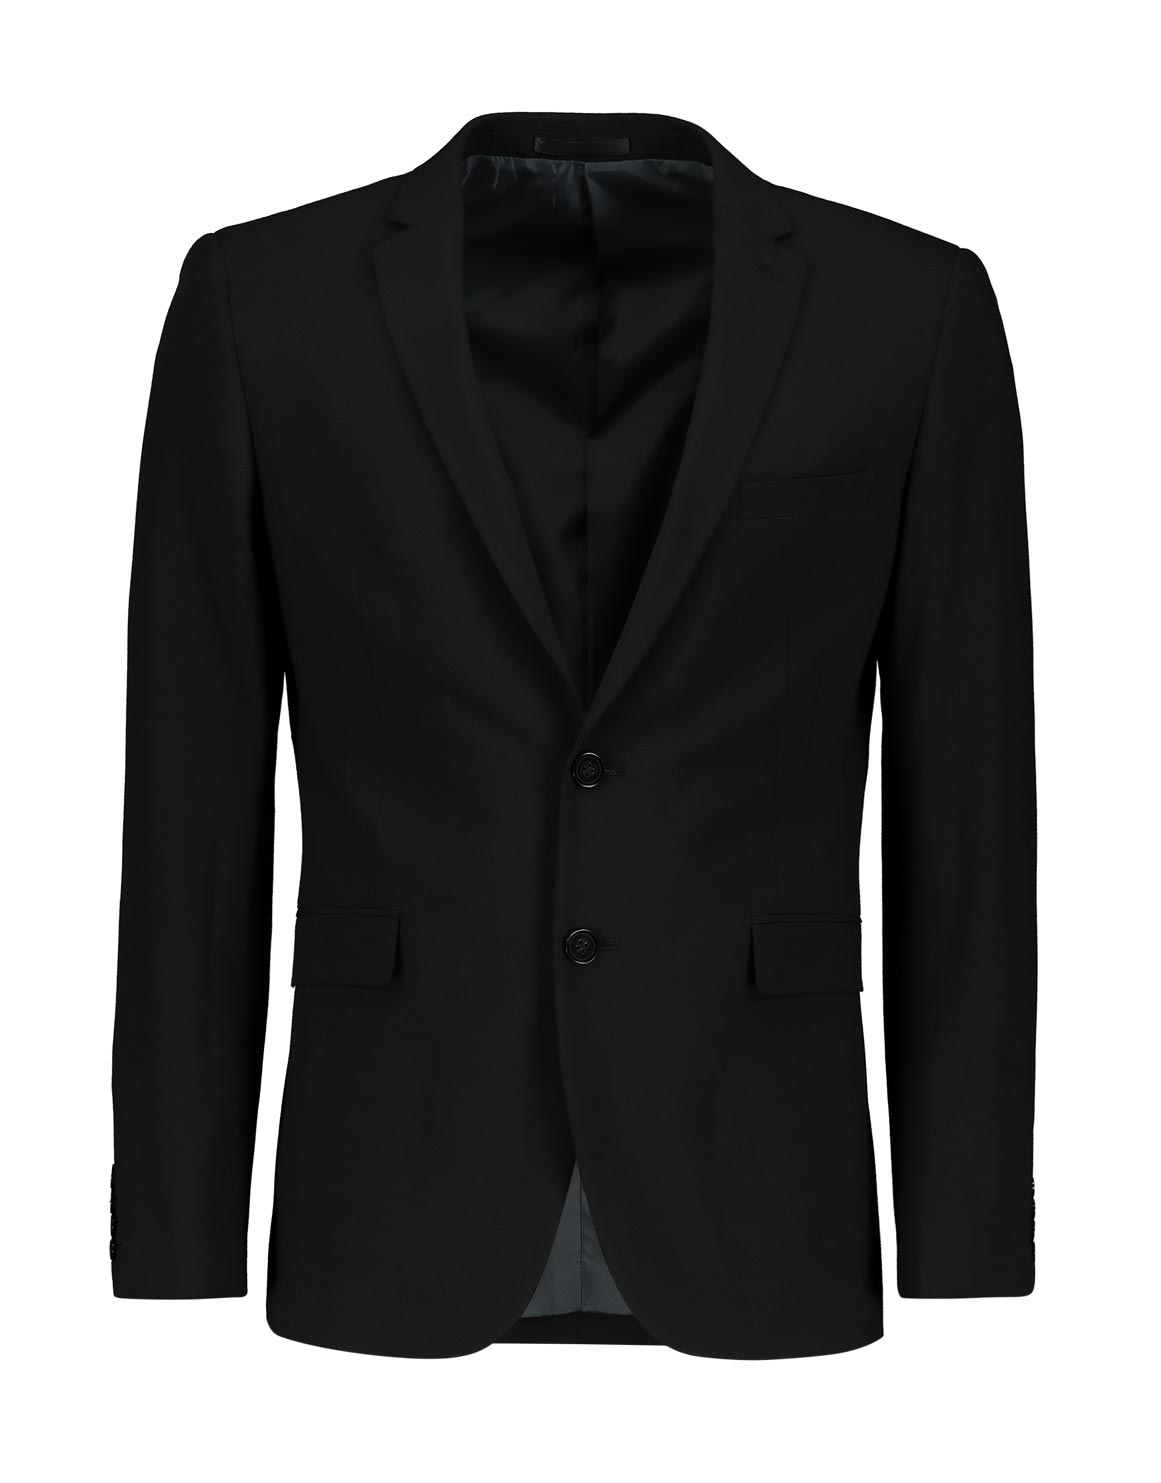 Black Skinny Viscose Blend Suit Jacket | Woolworths.co.za